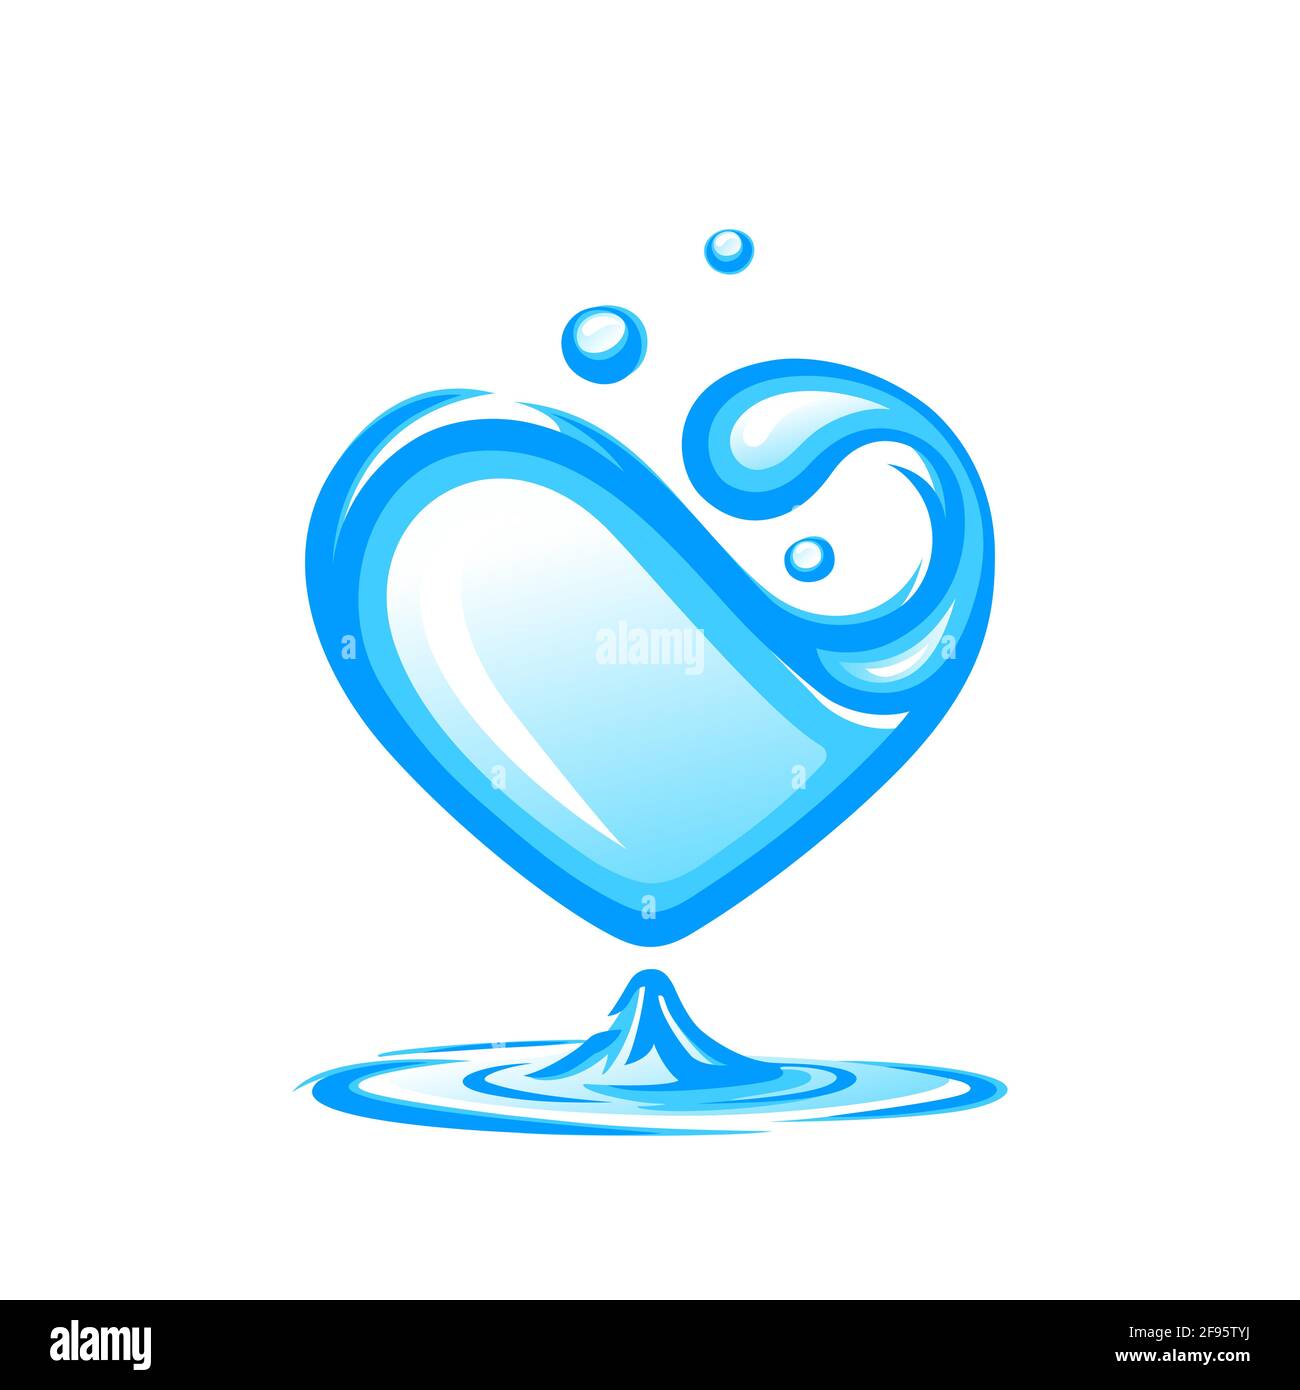 Acqua sotto forma di cuore. Concetto di progettazione di acqua pulita. Illustrazione vettoriale, isolata su sfondo bianco Illustrazione Vettoriale